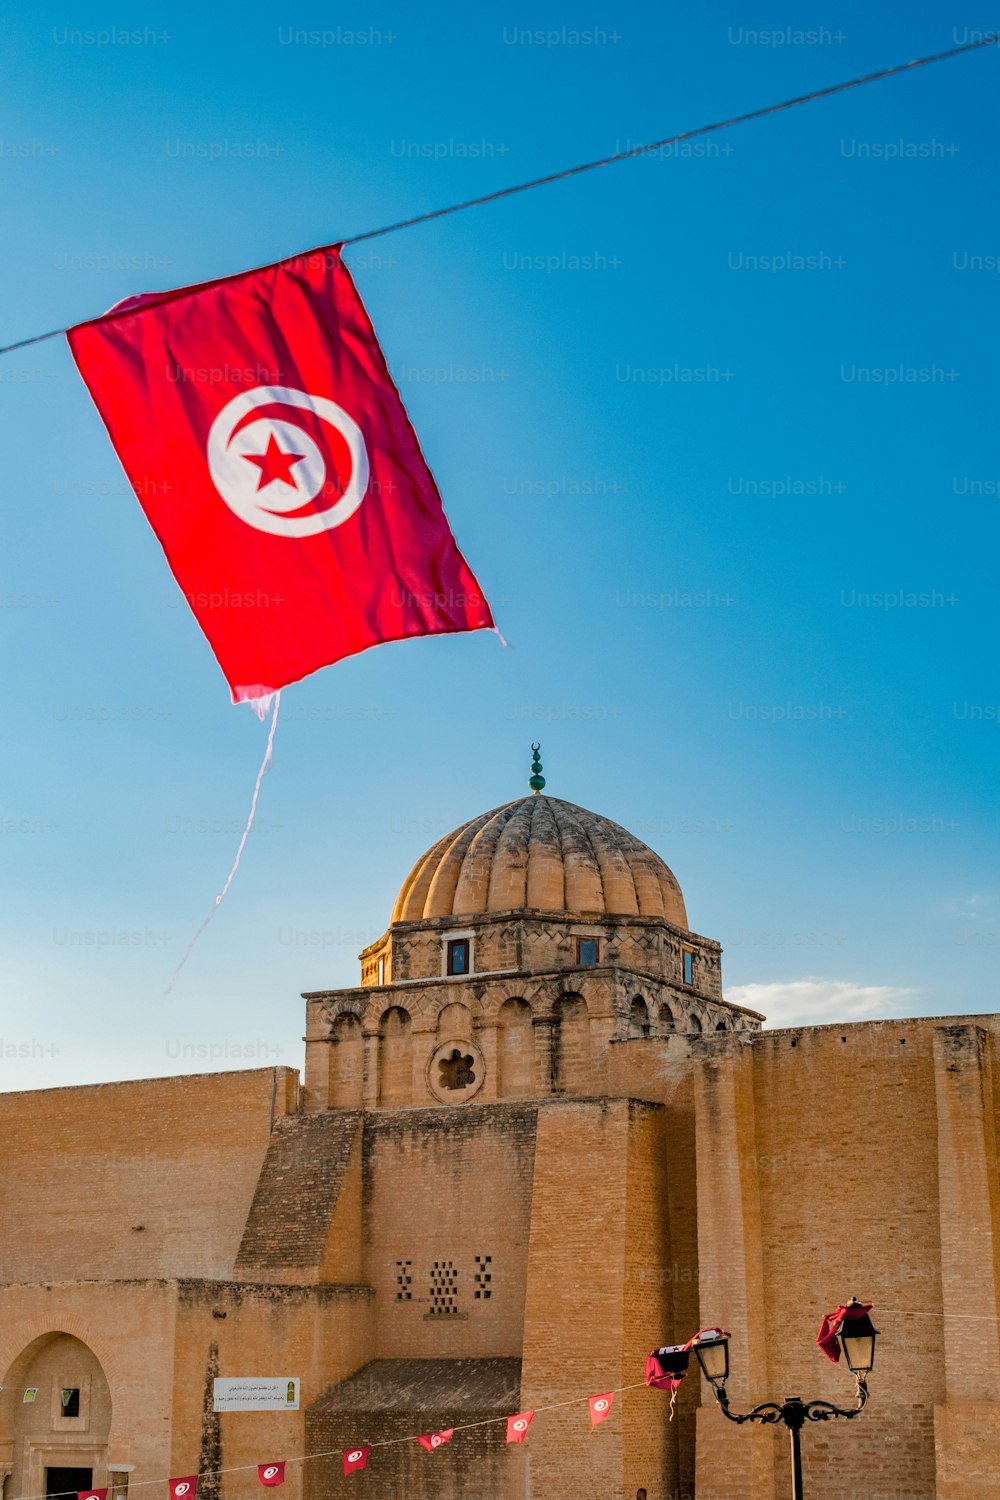 Un'inquadratura dal basso della Grande Moschea di Kairouan in Tunisia